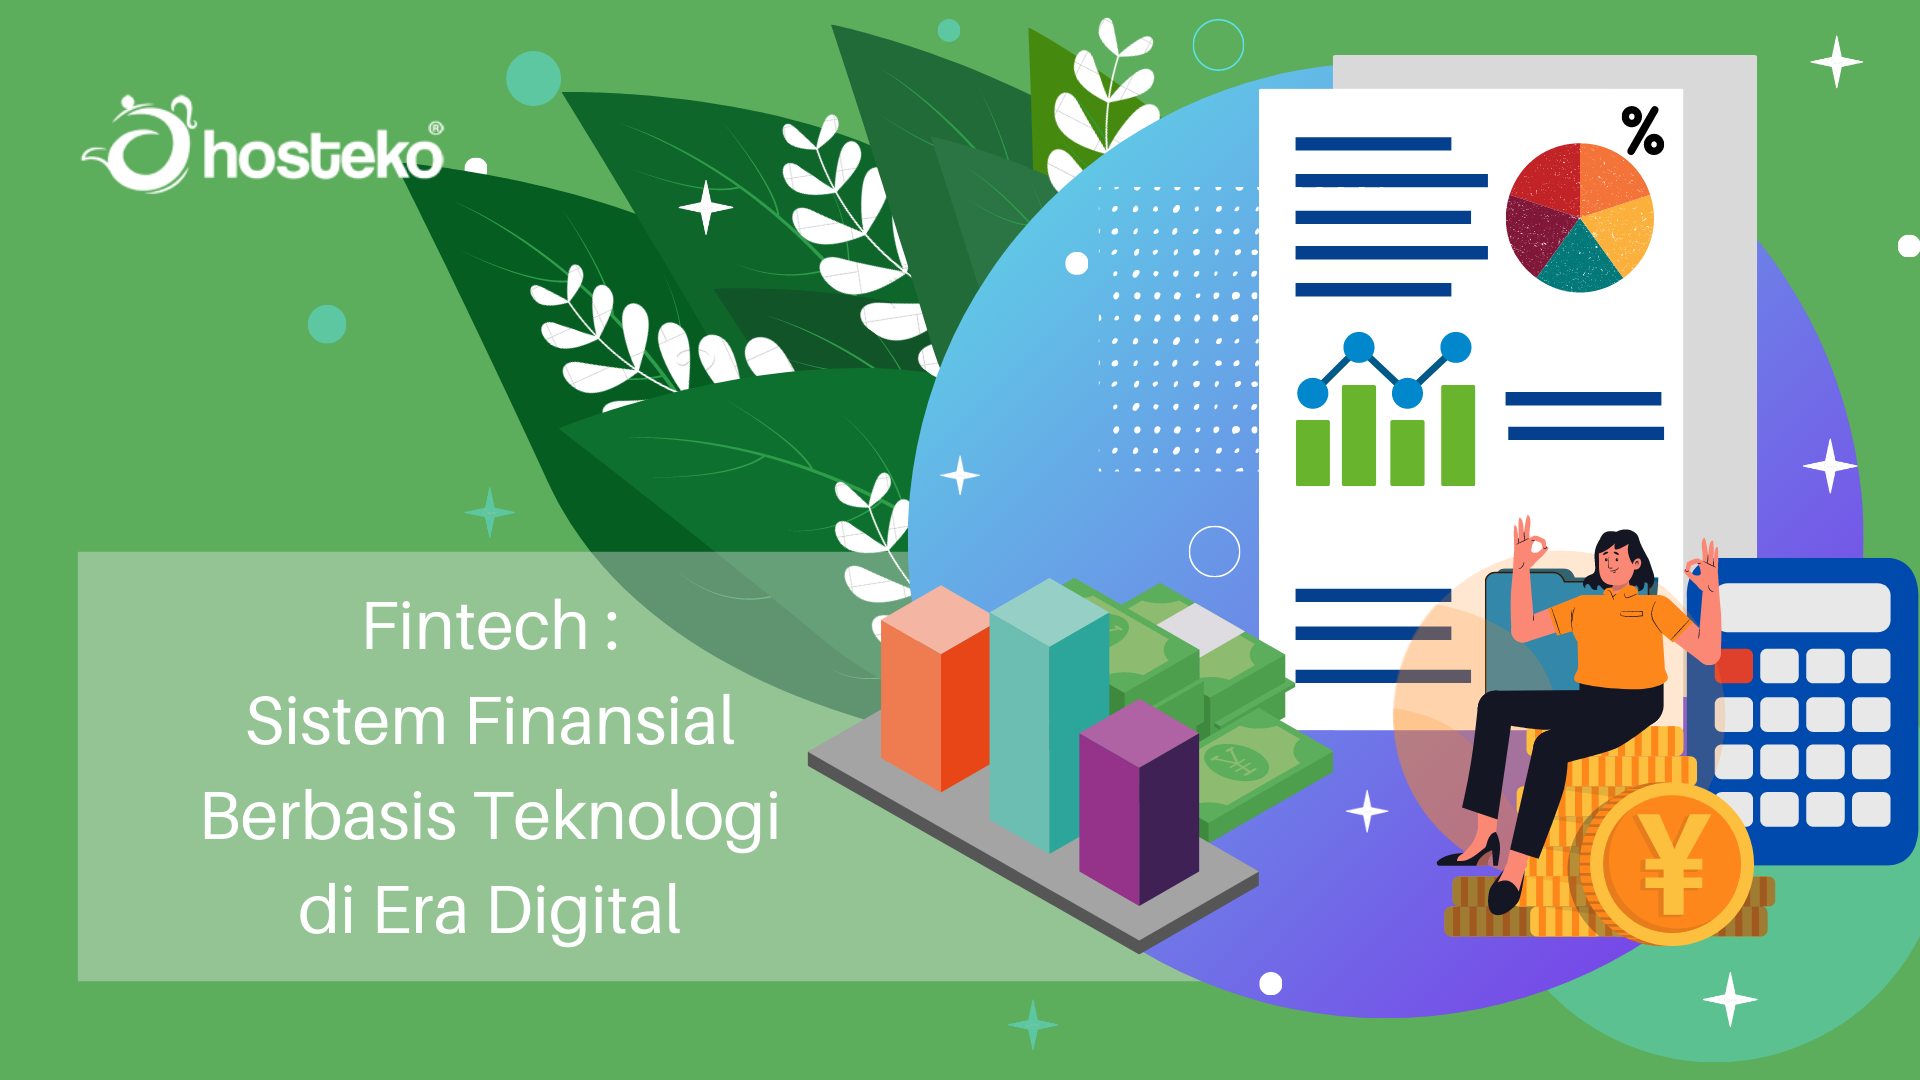 Fintech : Sistem Finansial Berbasis Teknologi di Era Digital